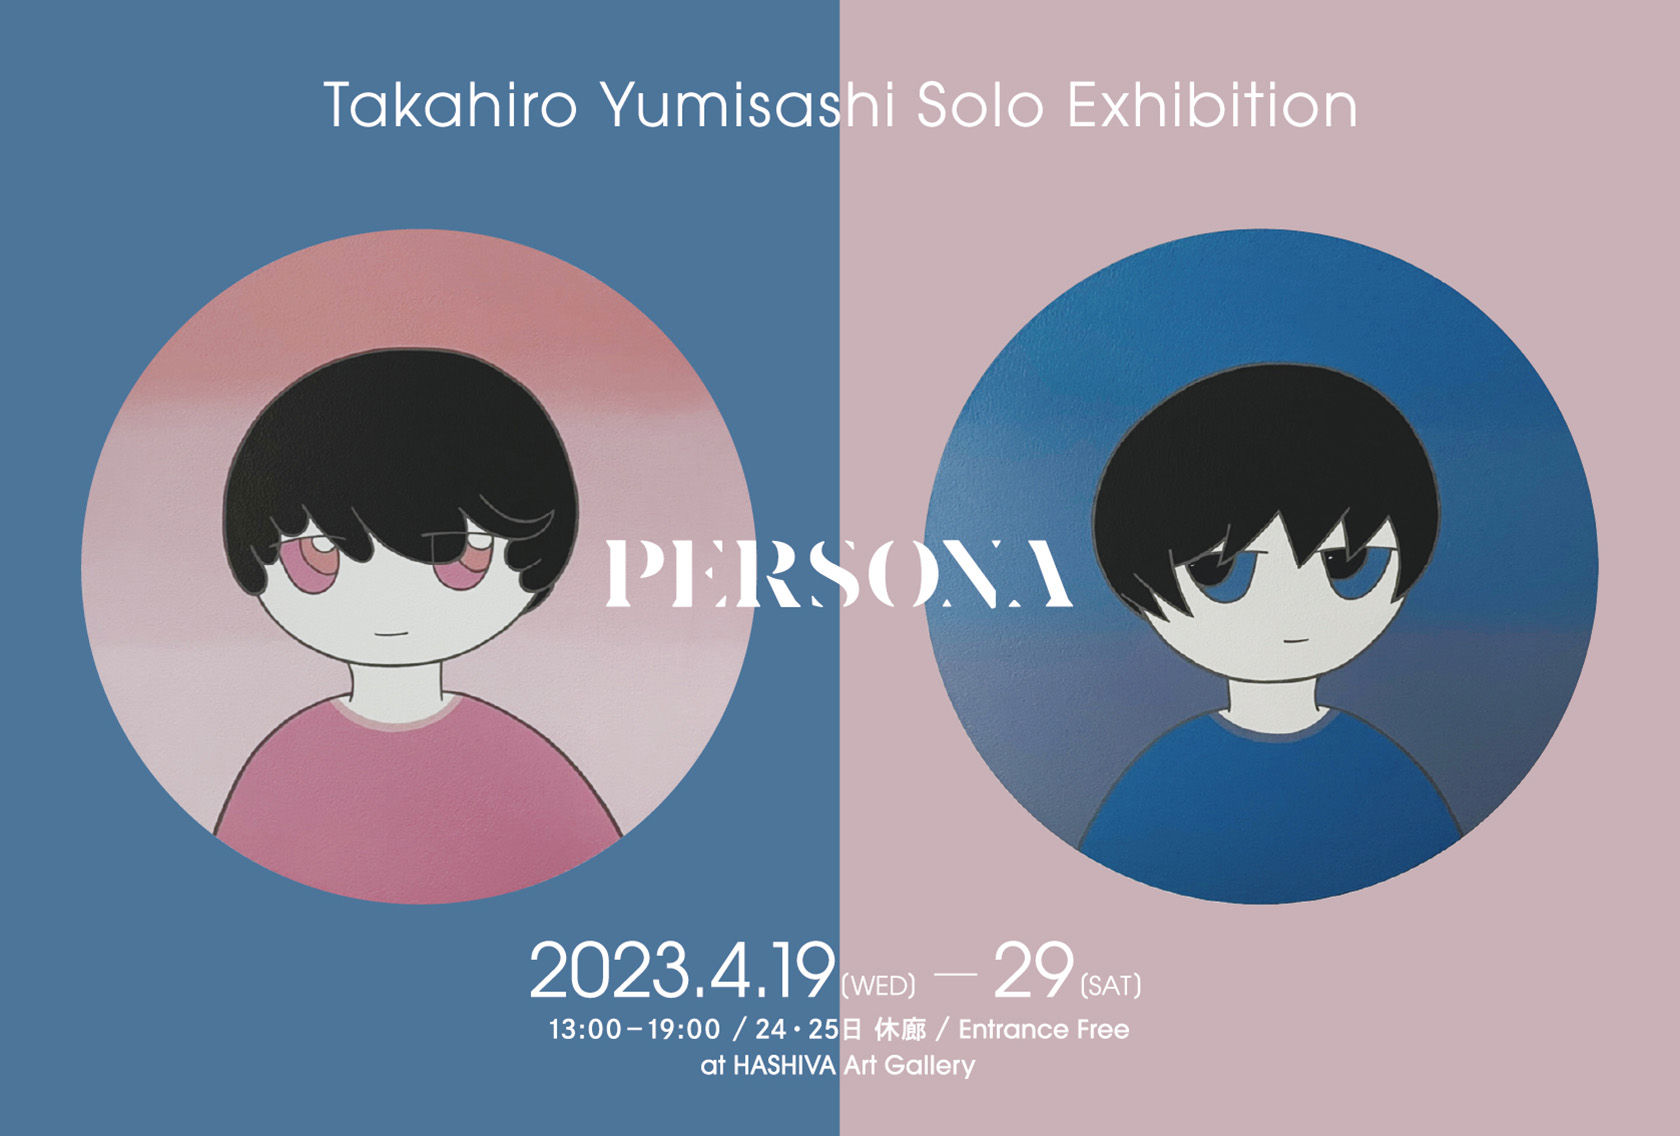 現代アーティスト弓指貴弘の展示会「PERSONA」のポスター